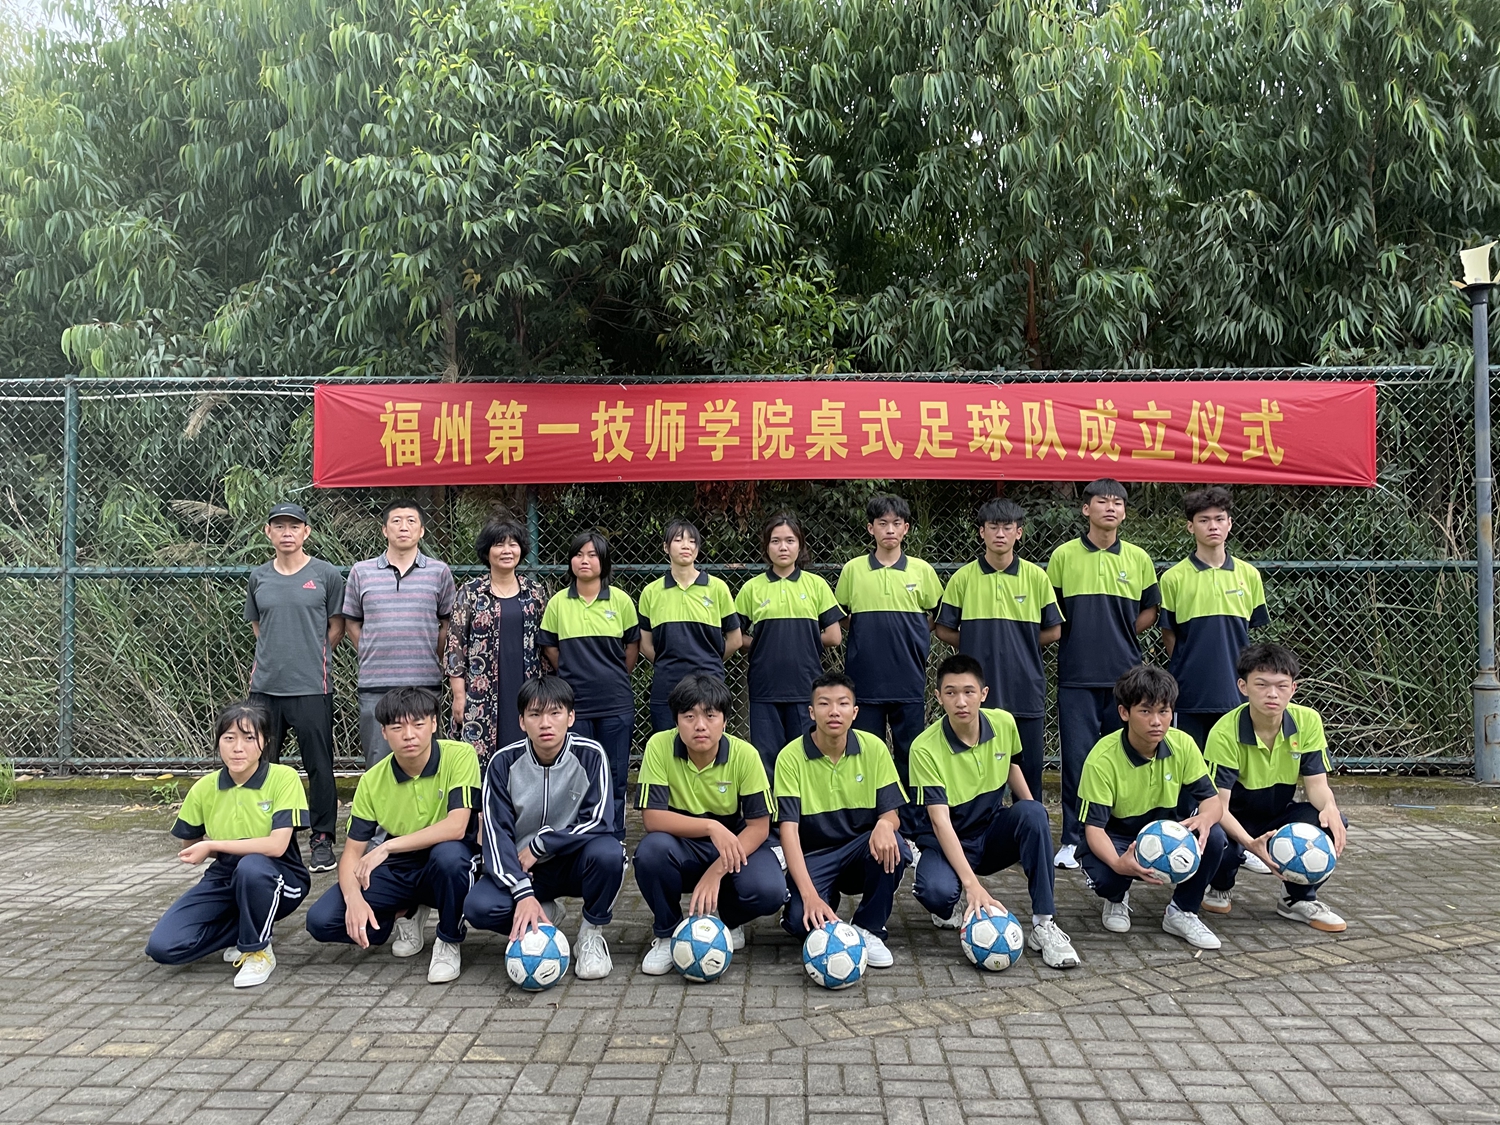 福州一技师院举行桌式足球队成立仪式